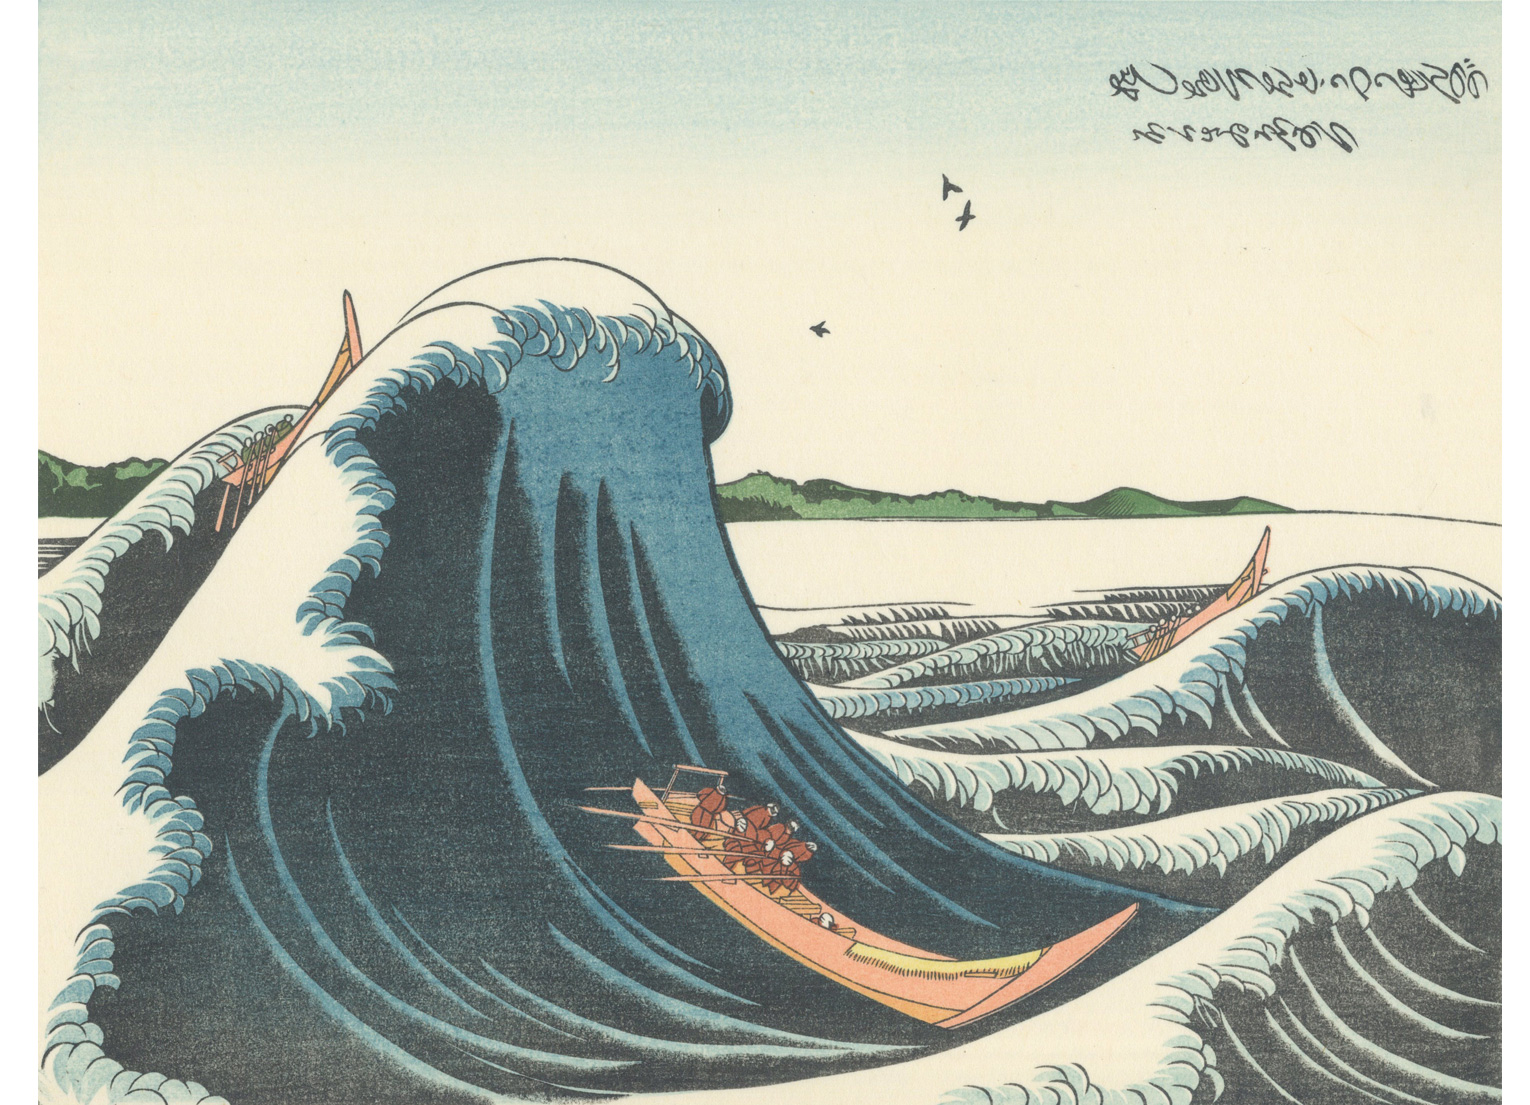 アダチ版復刻浮世絵で楽しむ “The Great Wave” 江戸の人々を魅力した 